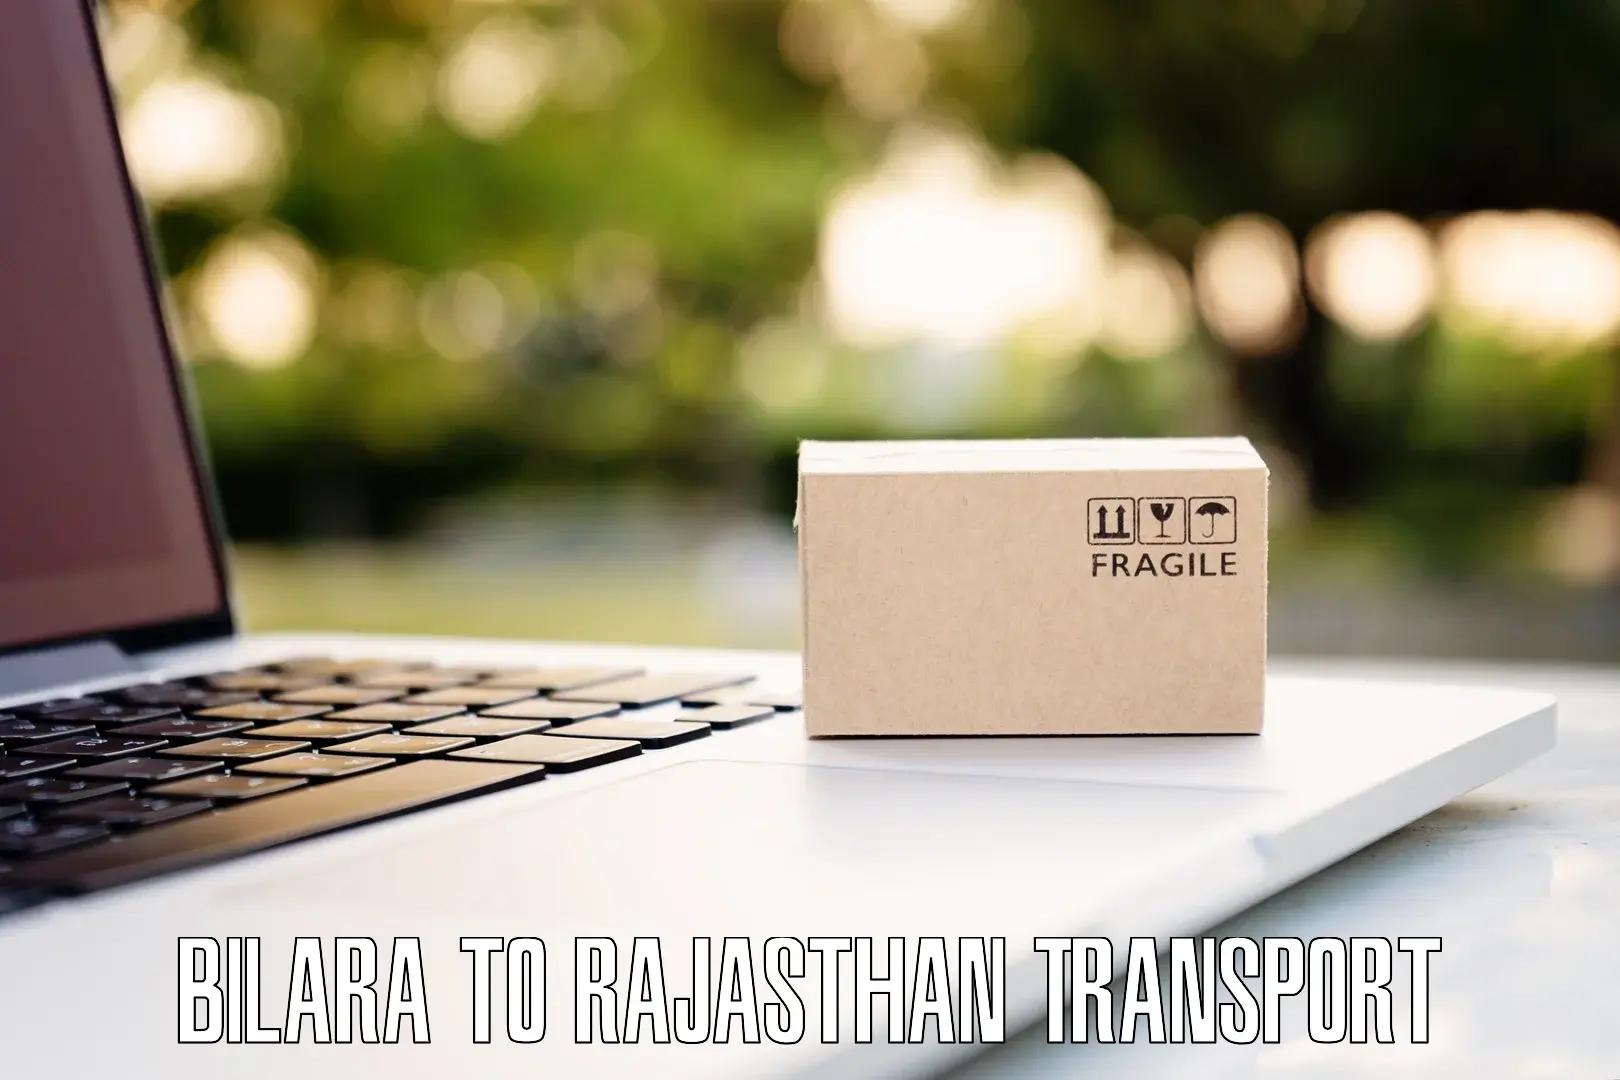 Interstate transport services in Bilara to Taranagar